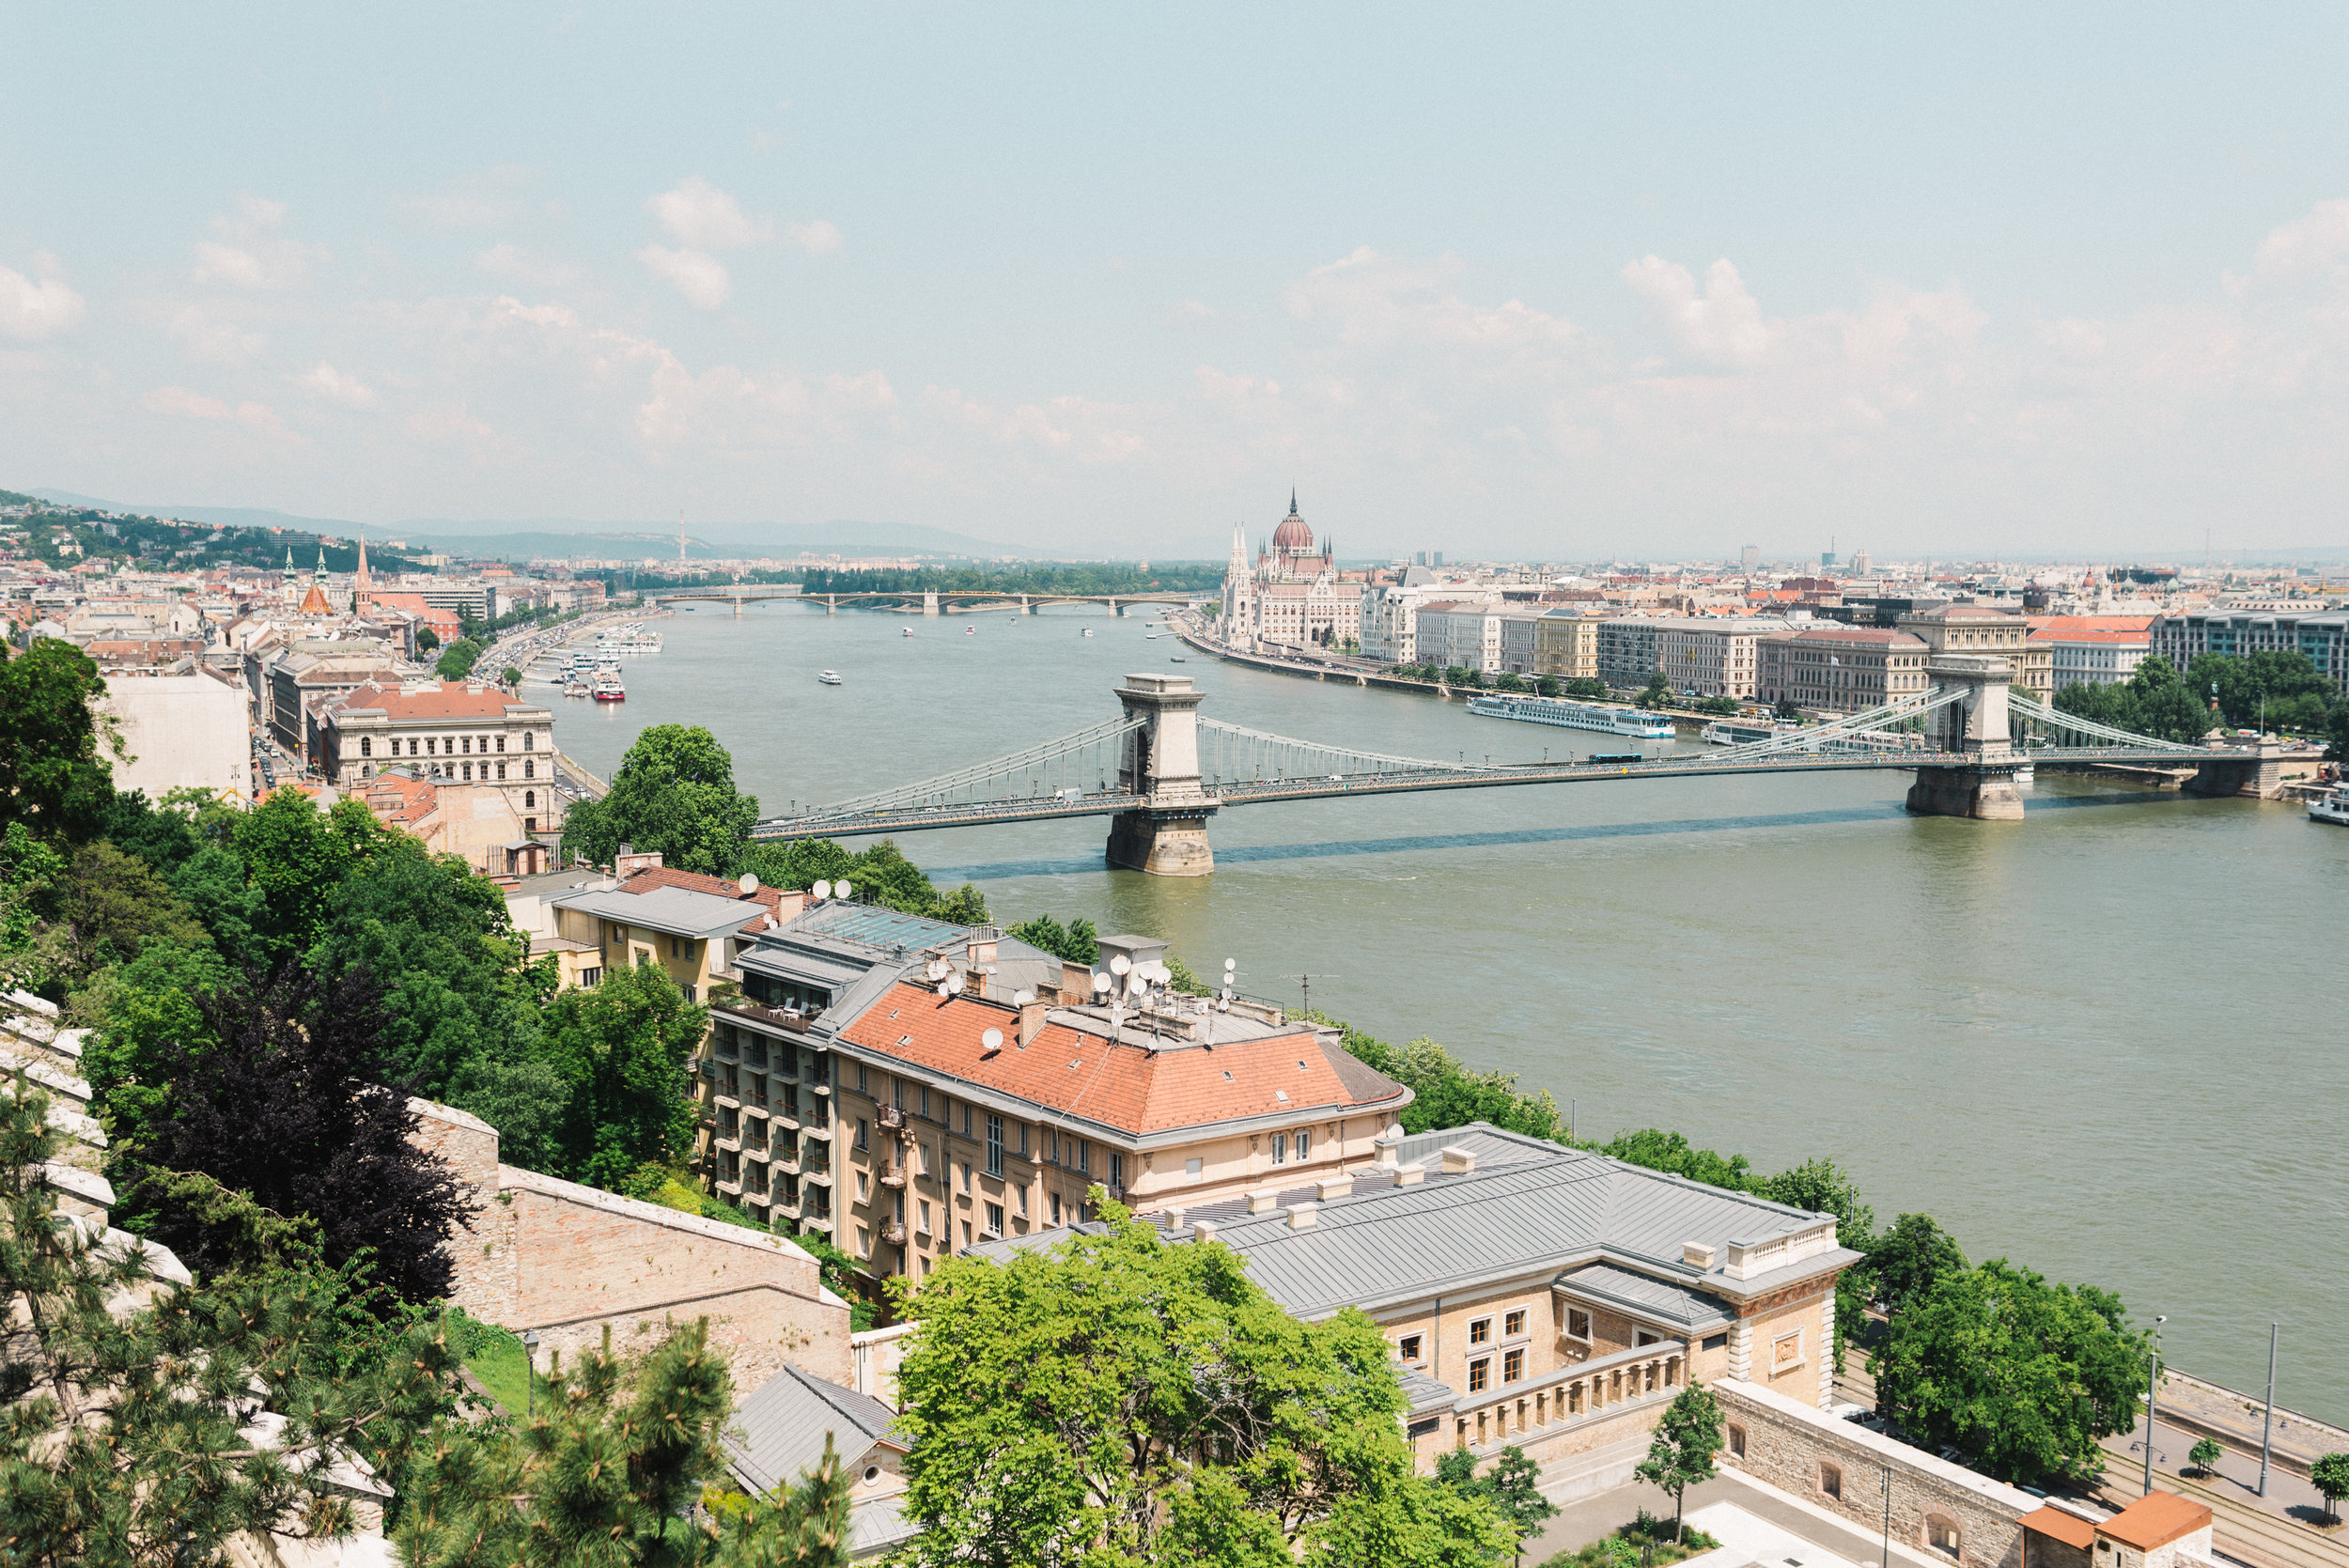  Flytographer:  Roky in Budapest   